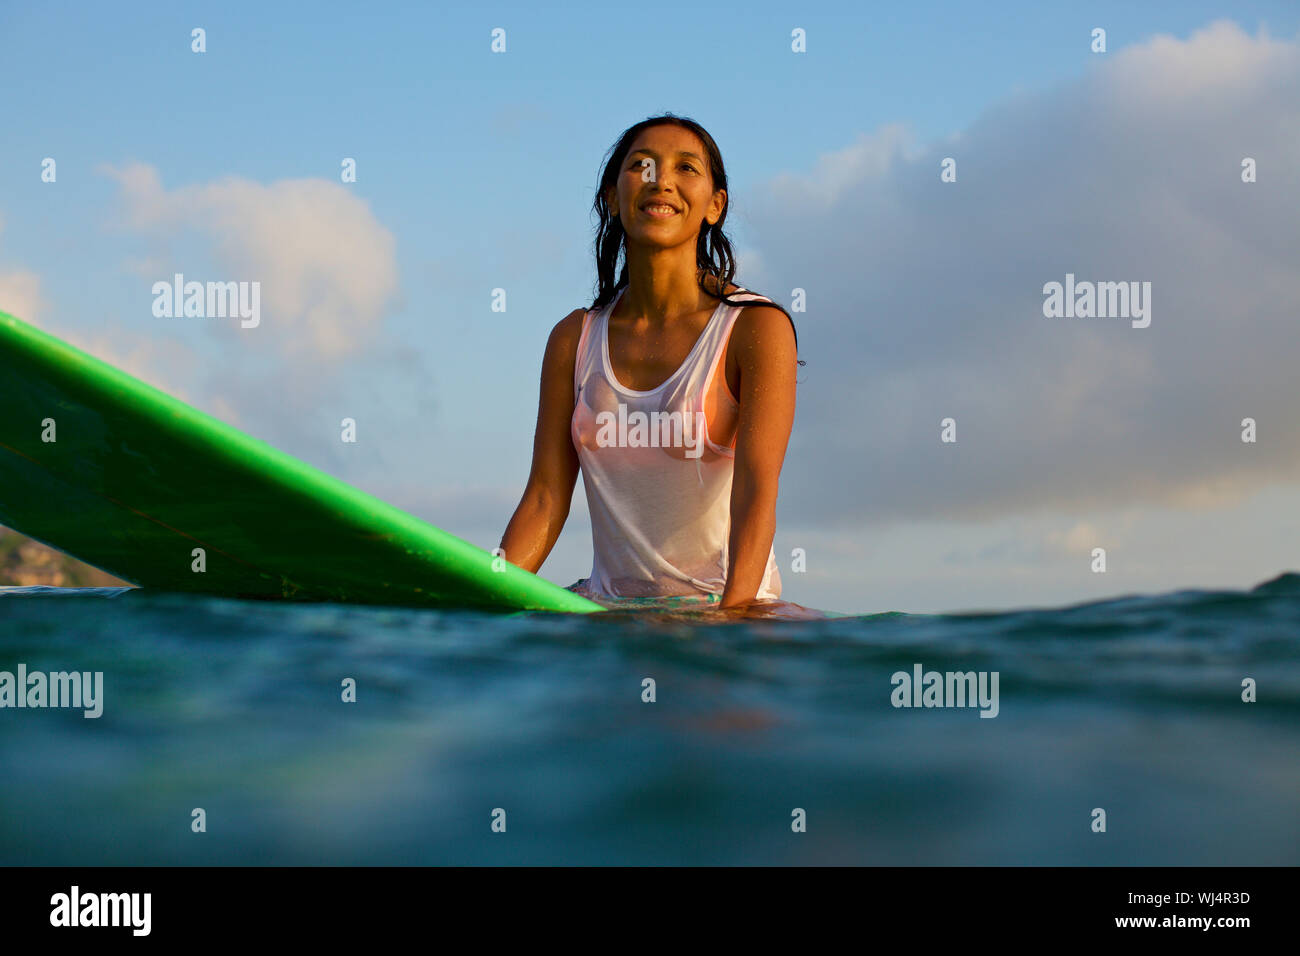 Souriant, confident female surfer en attente sur une planche de surf dans la région de ocean Banque D'Images